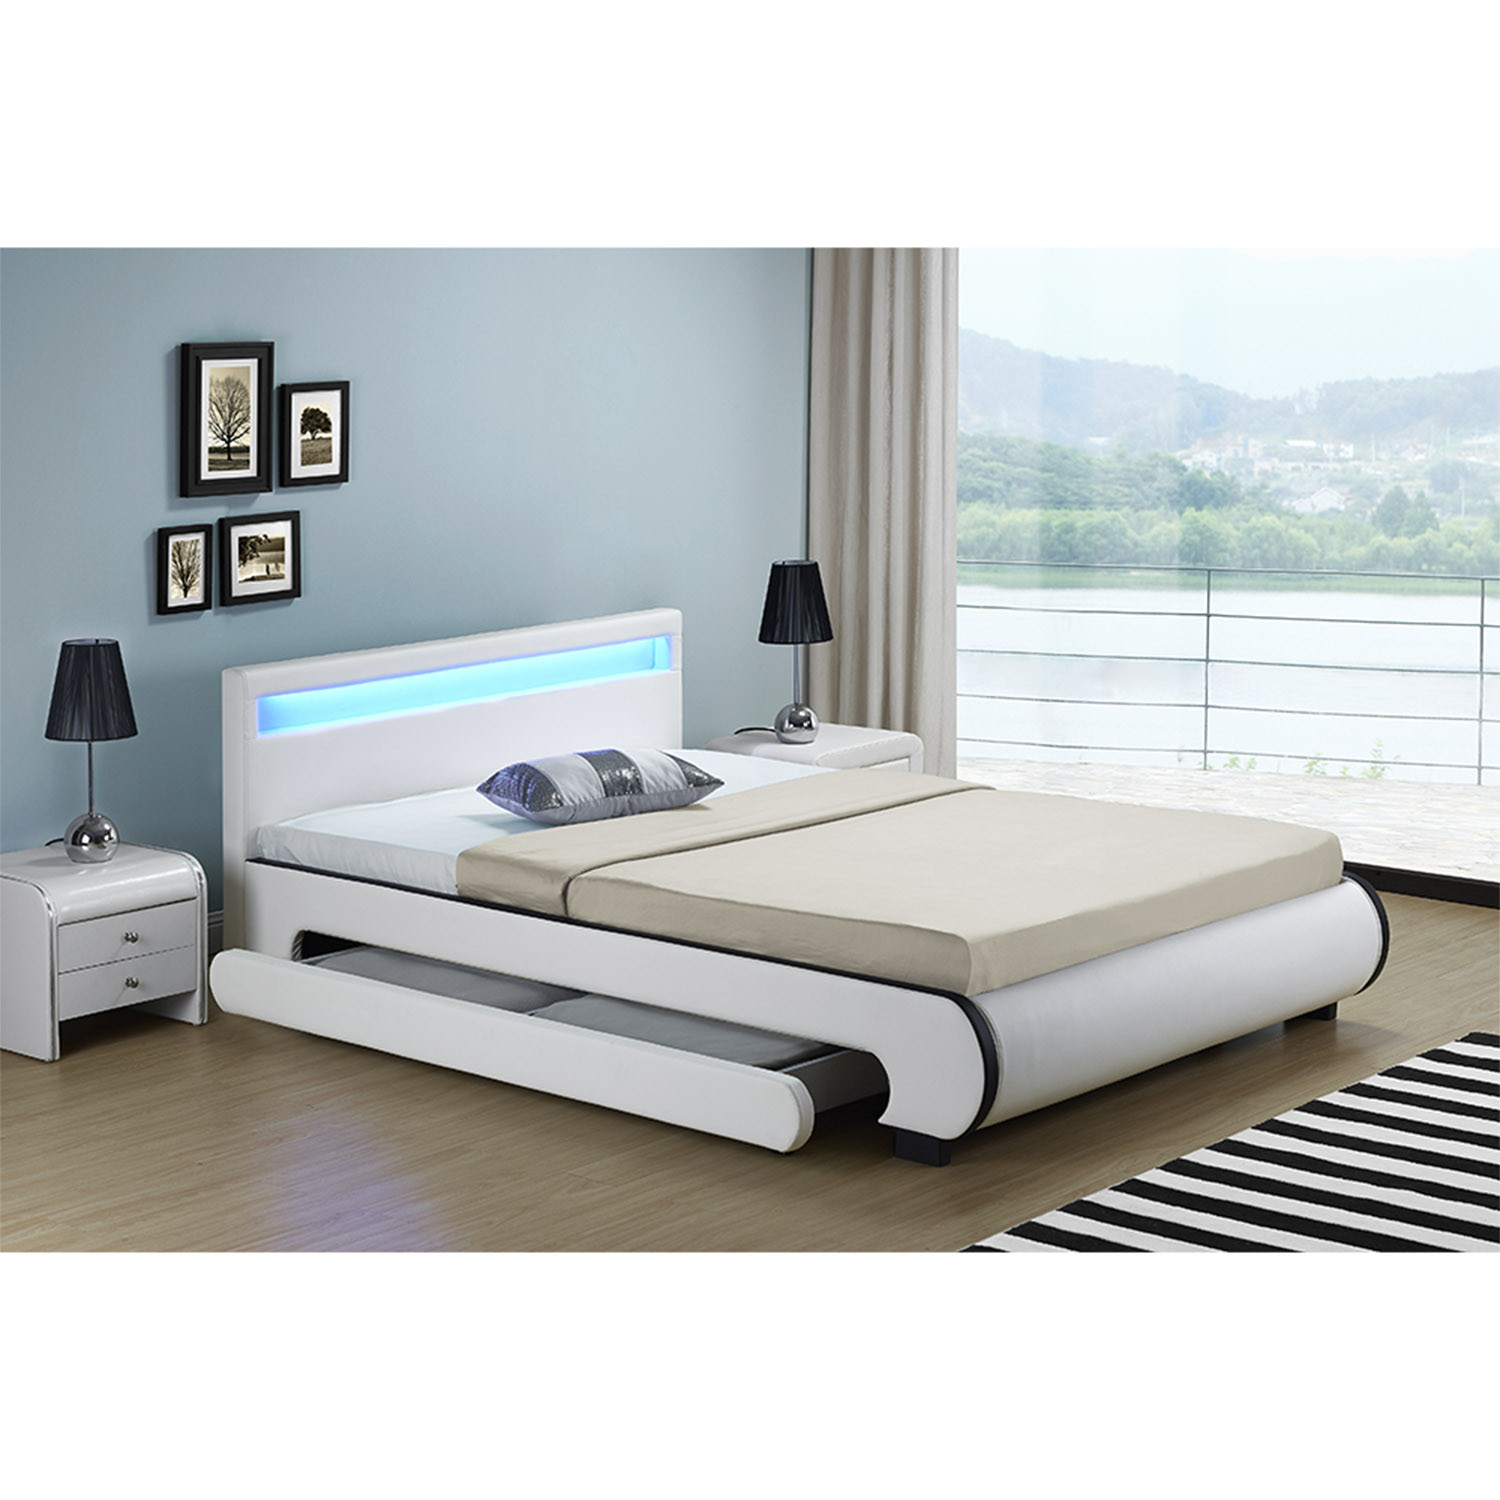 Polsterbett Mit Bettkasten
 Polsterbett Bilbao mit Bettkasten 140 x 200 cm weiß